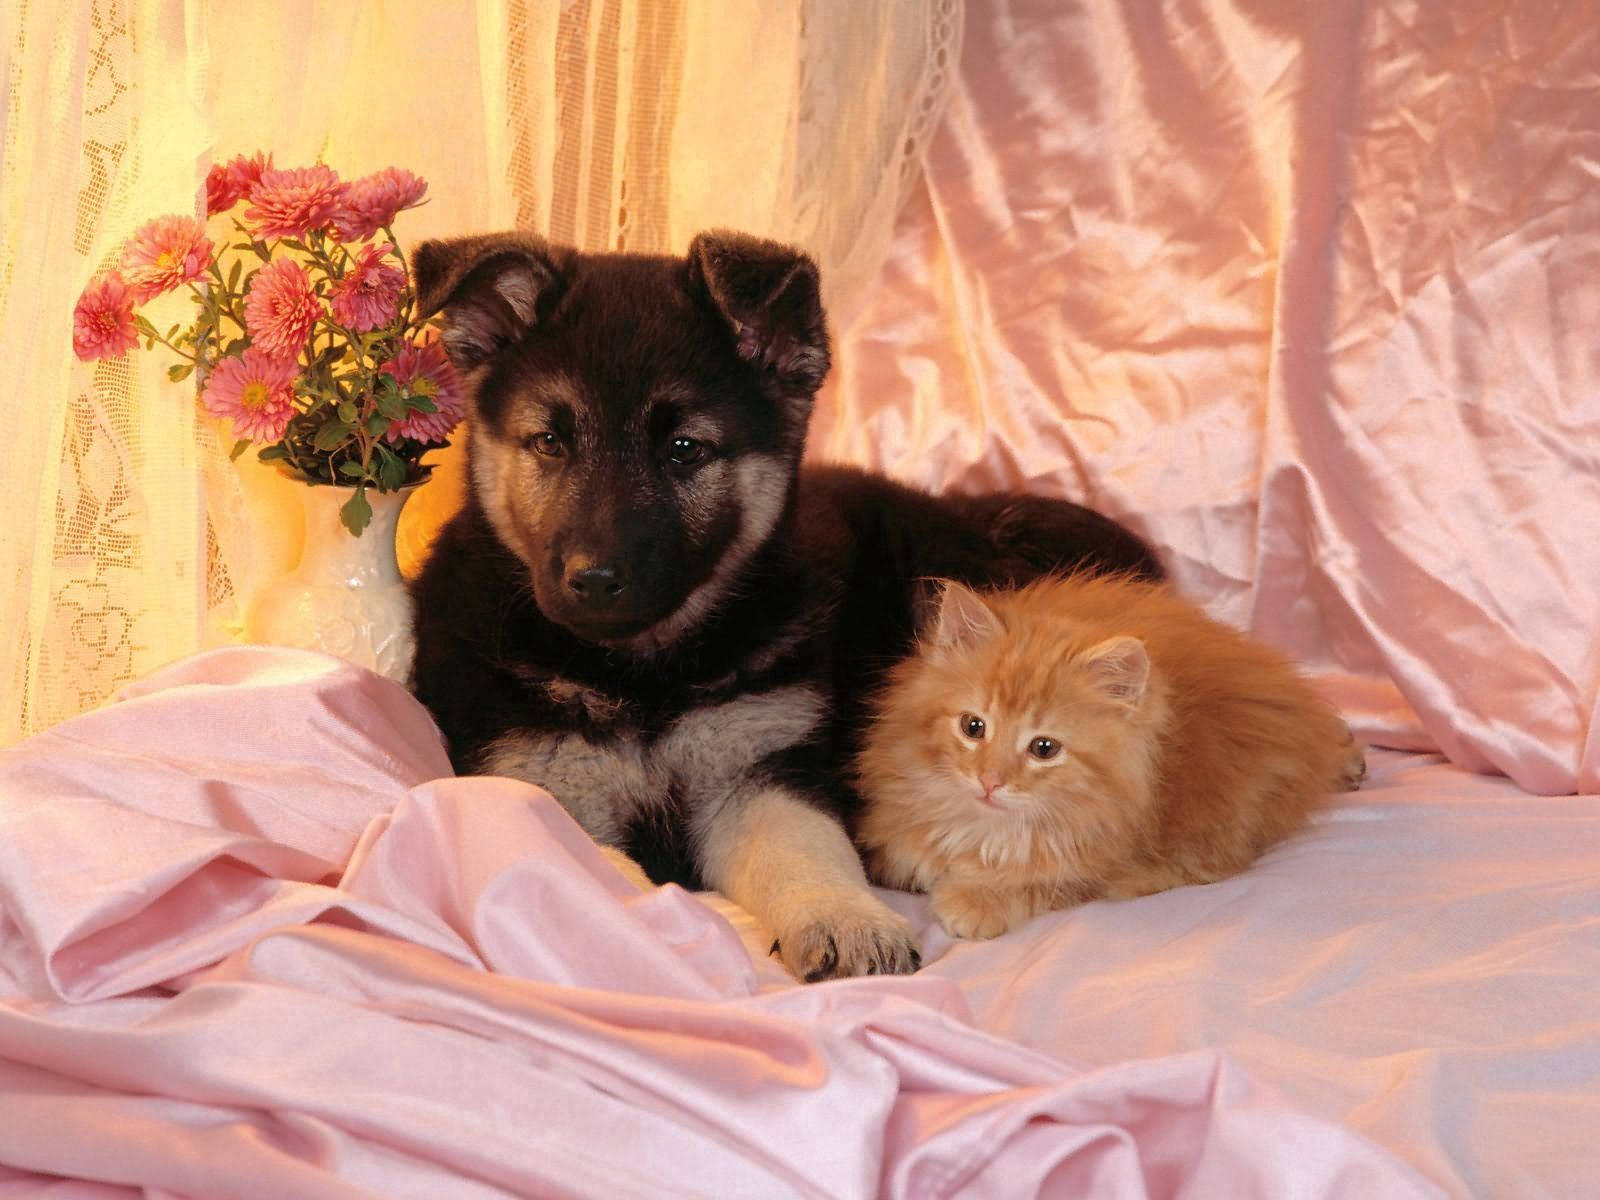 Dog And Cat Cute Friends